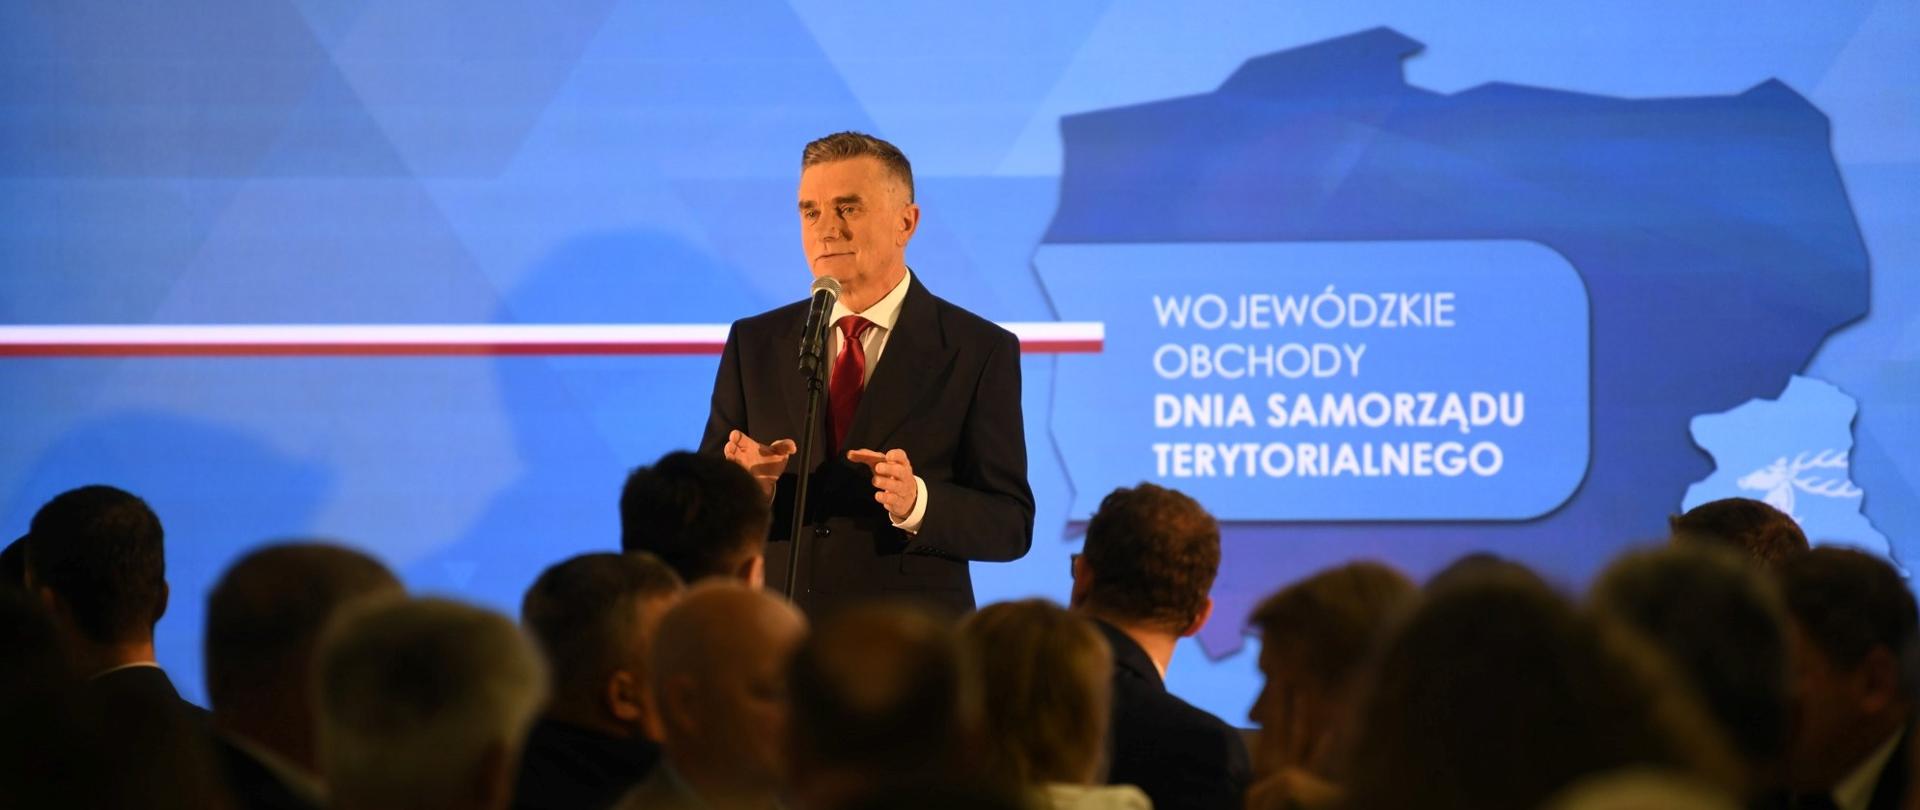 Wojewoda lubelski Lech Sprawka przemawia do uczestników wydarzenia siedzących na sali.